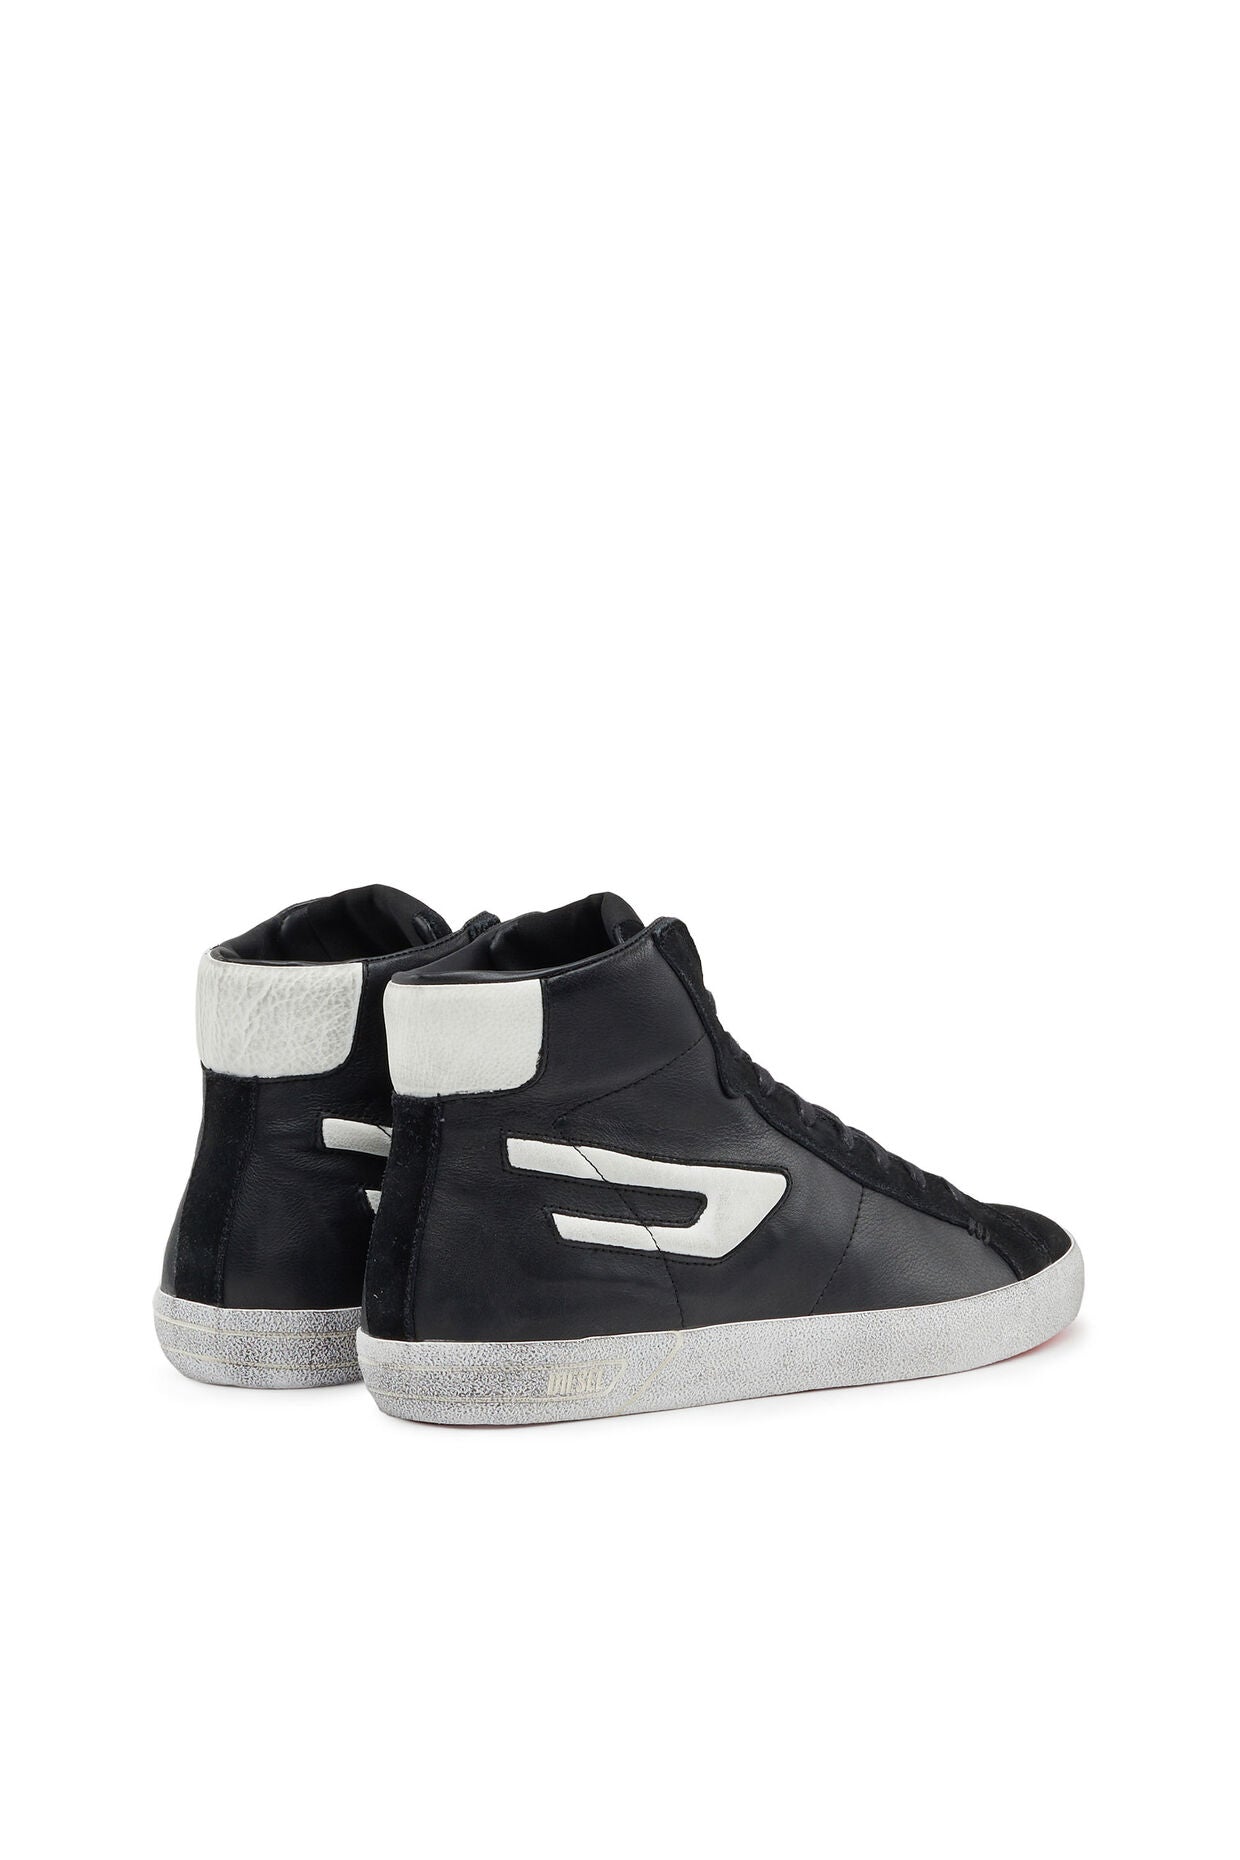 Diesel S-Leroji Mid - High Top Sneaker | Black &amp; White